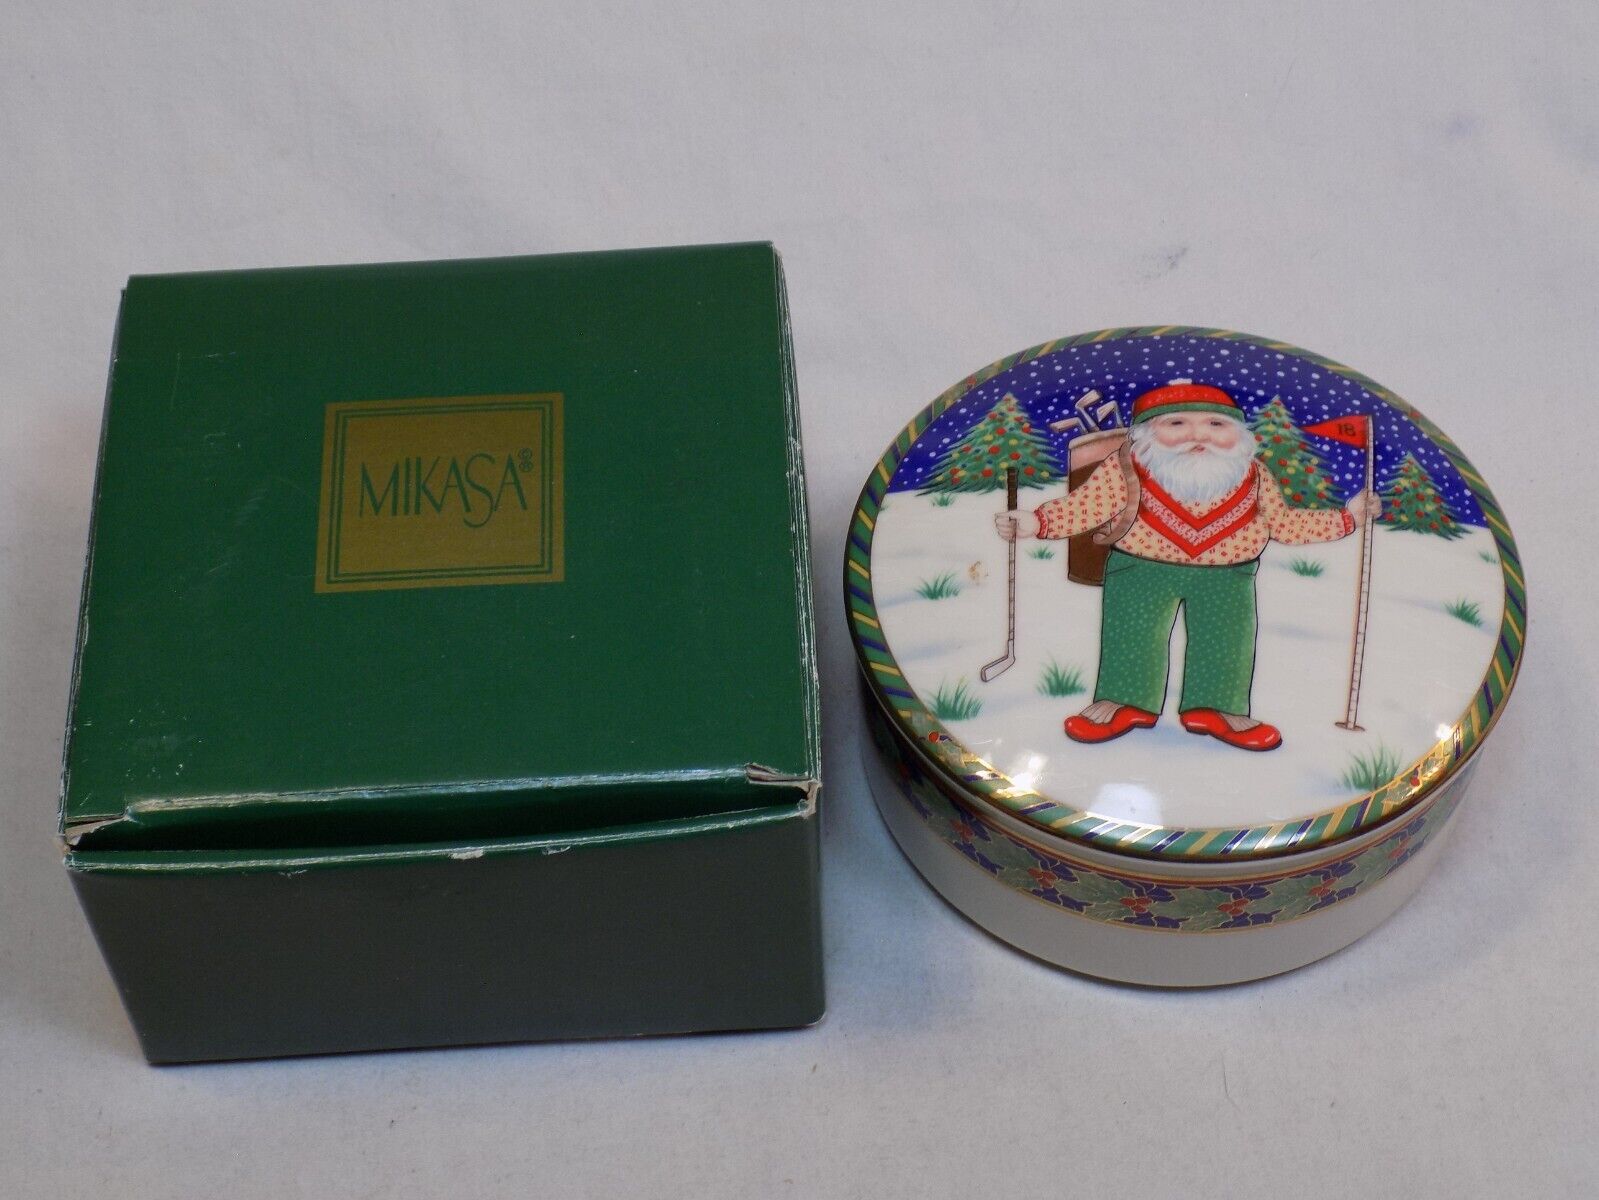 Mikasa Santa Claus North Pole Golfer Christmas Holiday Covered Box Trinket Dish